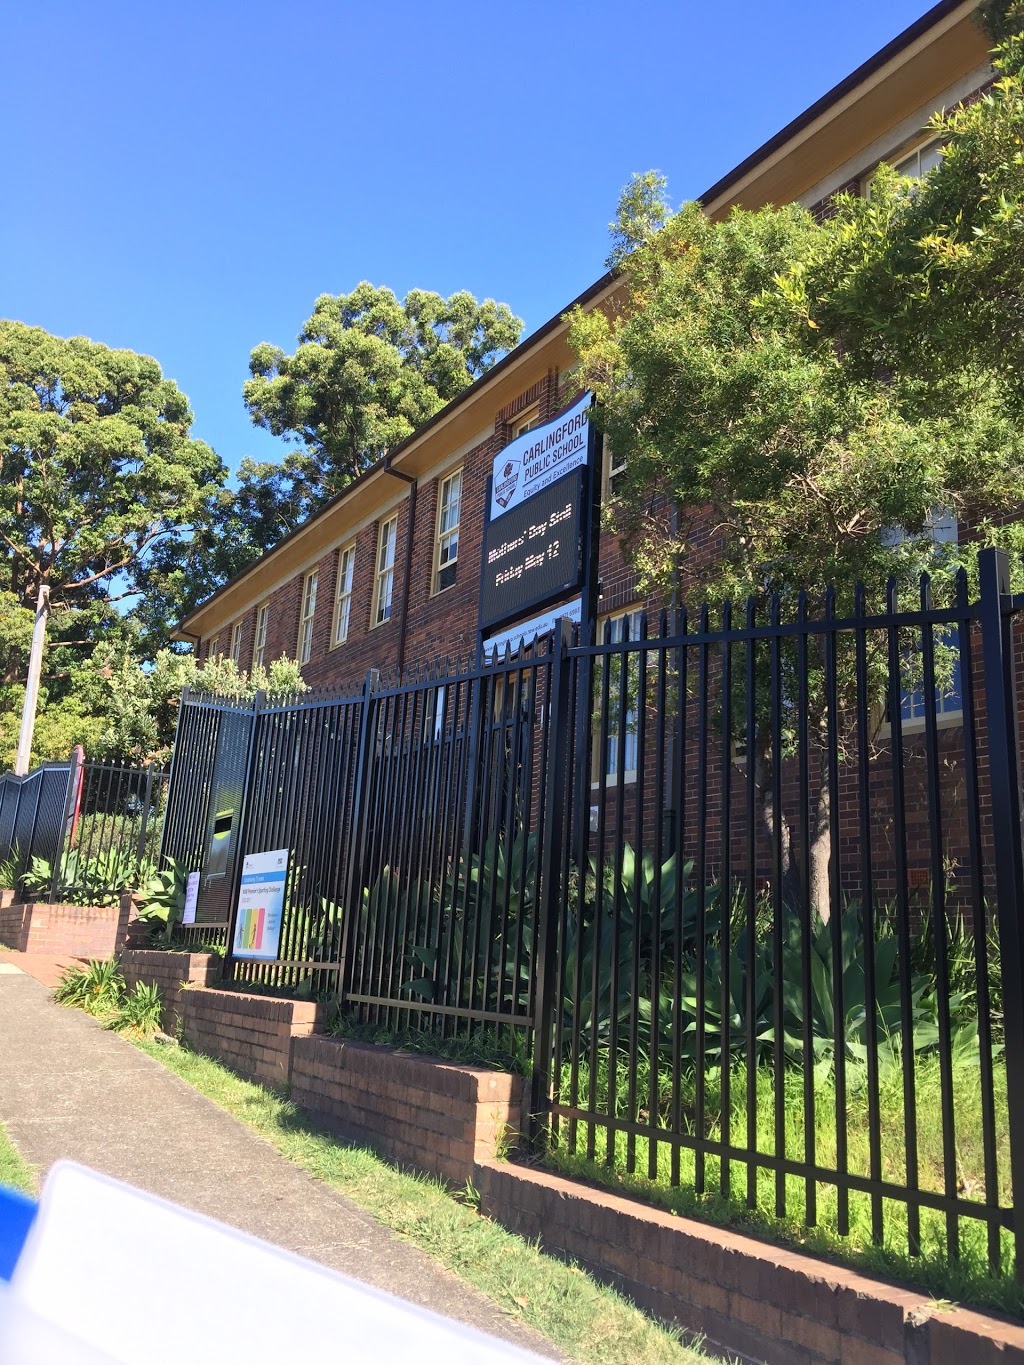 Carlingford Public School | school | 5 Rickard St, Carlingford NSW 2118, Australia | 0298716983 OR +61 2 9871 6983